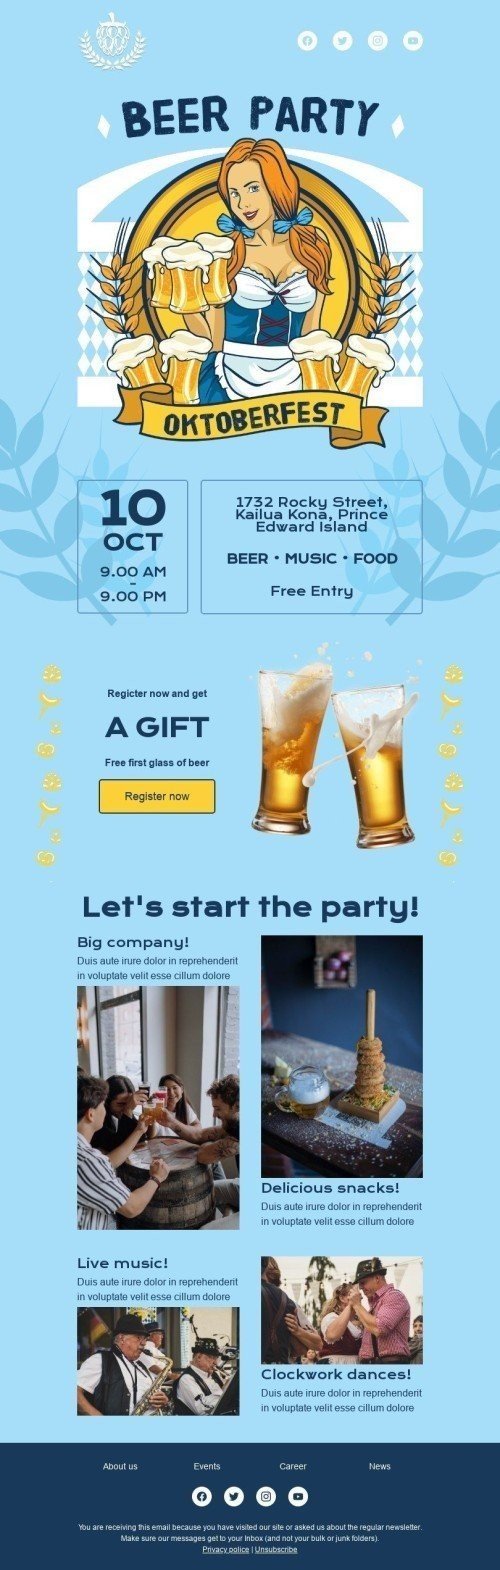 Plantilla de correo electrónico «Fiesta de la cerveza» de Oktoberfest para la industria de Hobbies Vista de móvil